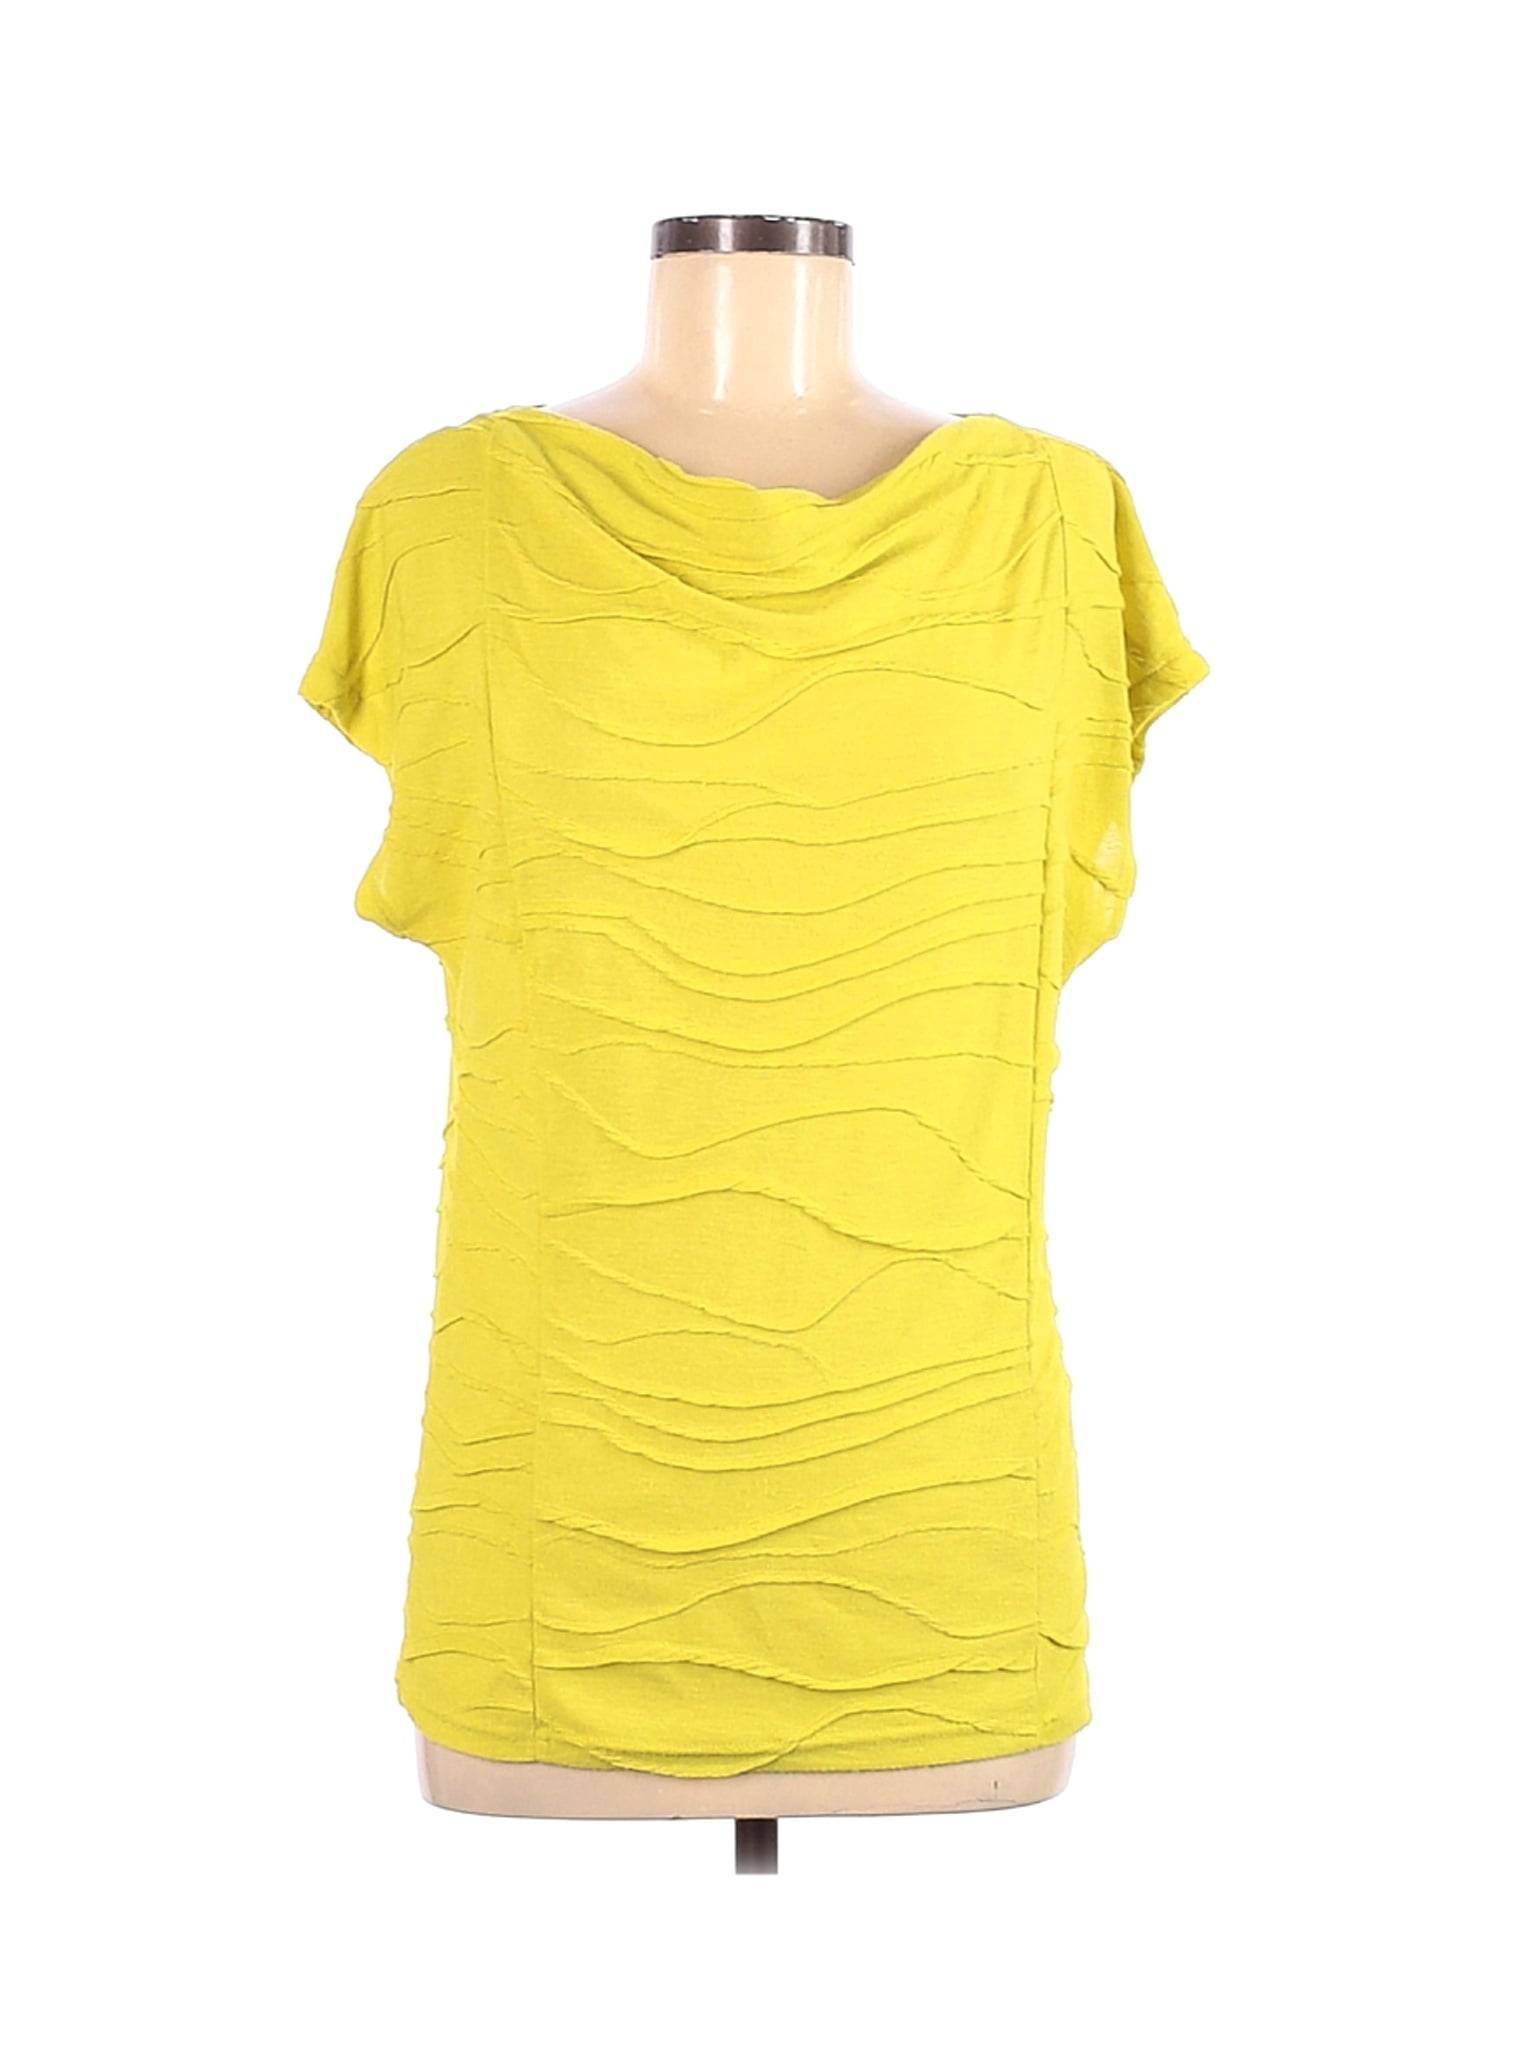 calvin klein yellow blouse